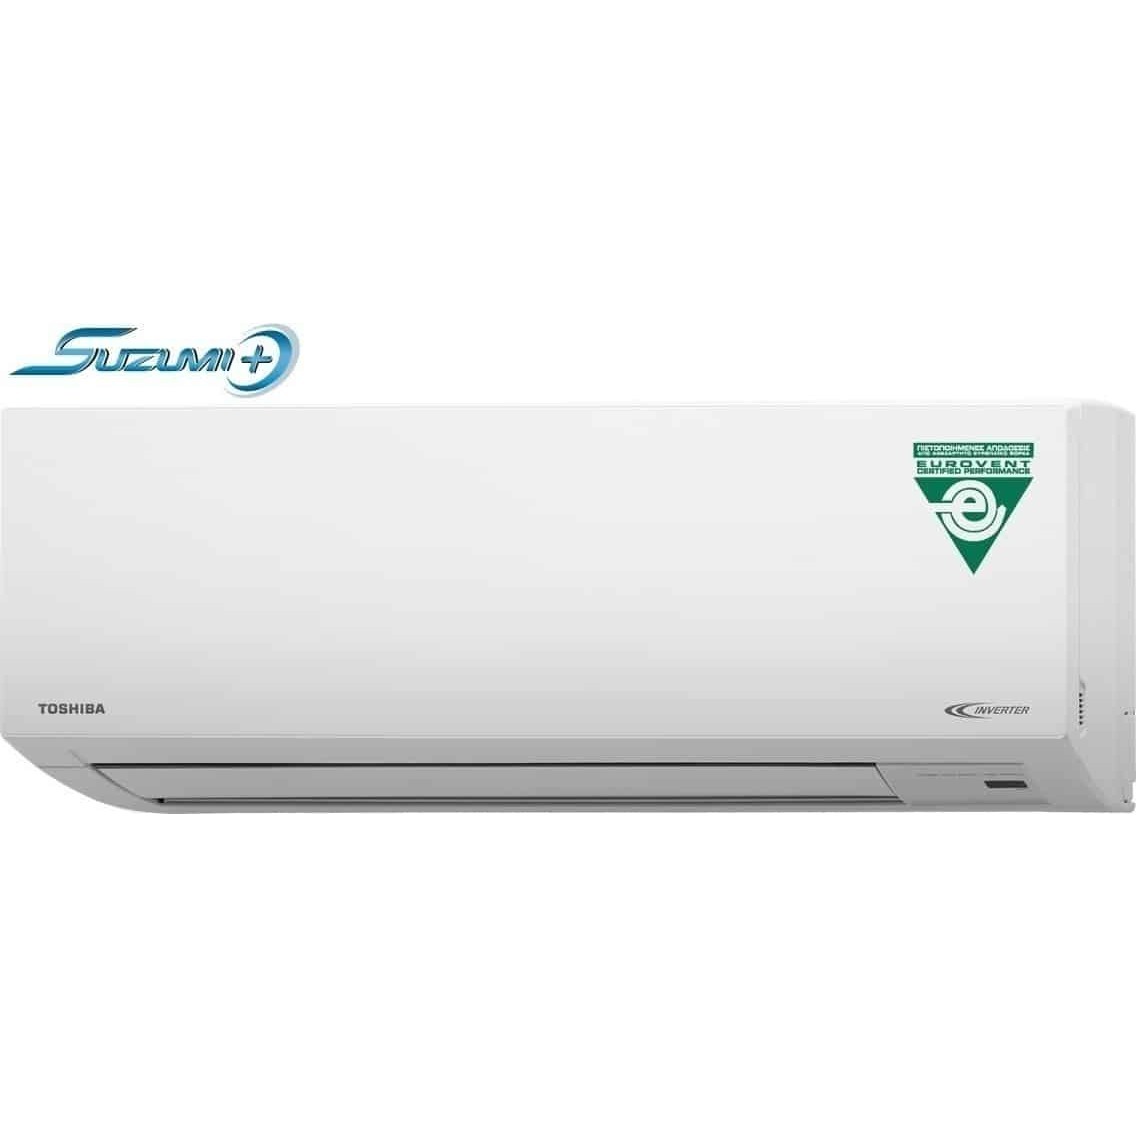 κλιματιστικό Toshiba Suzumi Plus RAS-18N3AV2-E / RAS-18N3KV2-E1 inverter 18000btu   έως 12 δόσεις